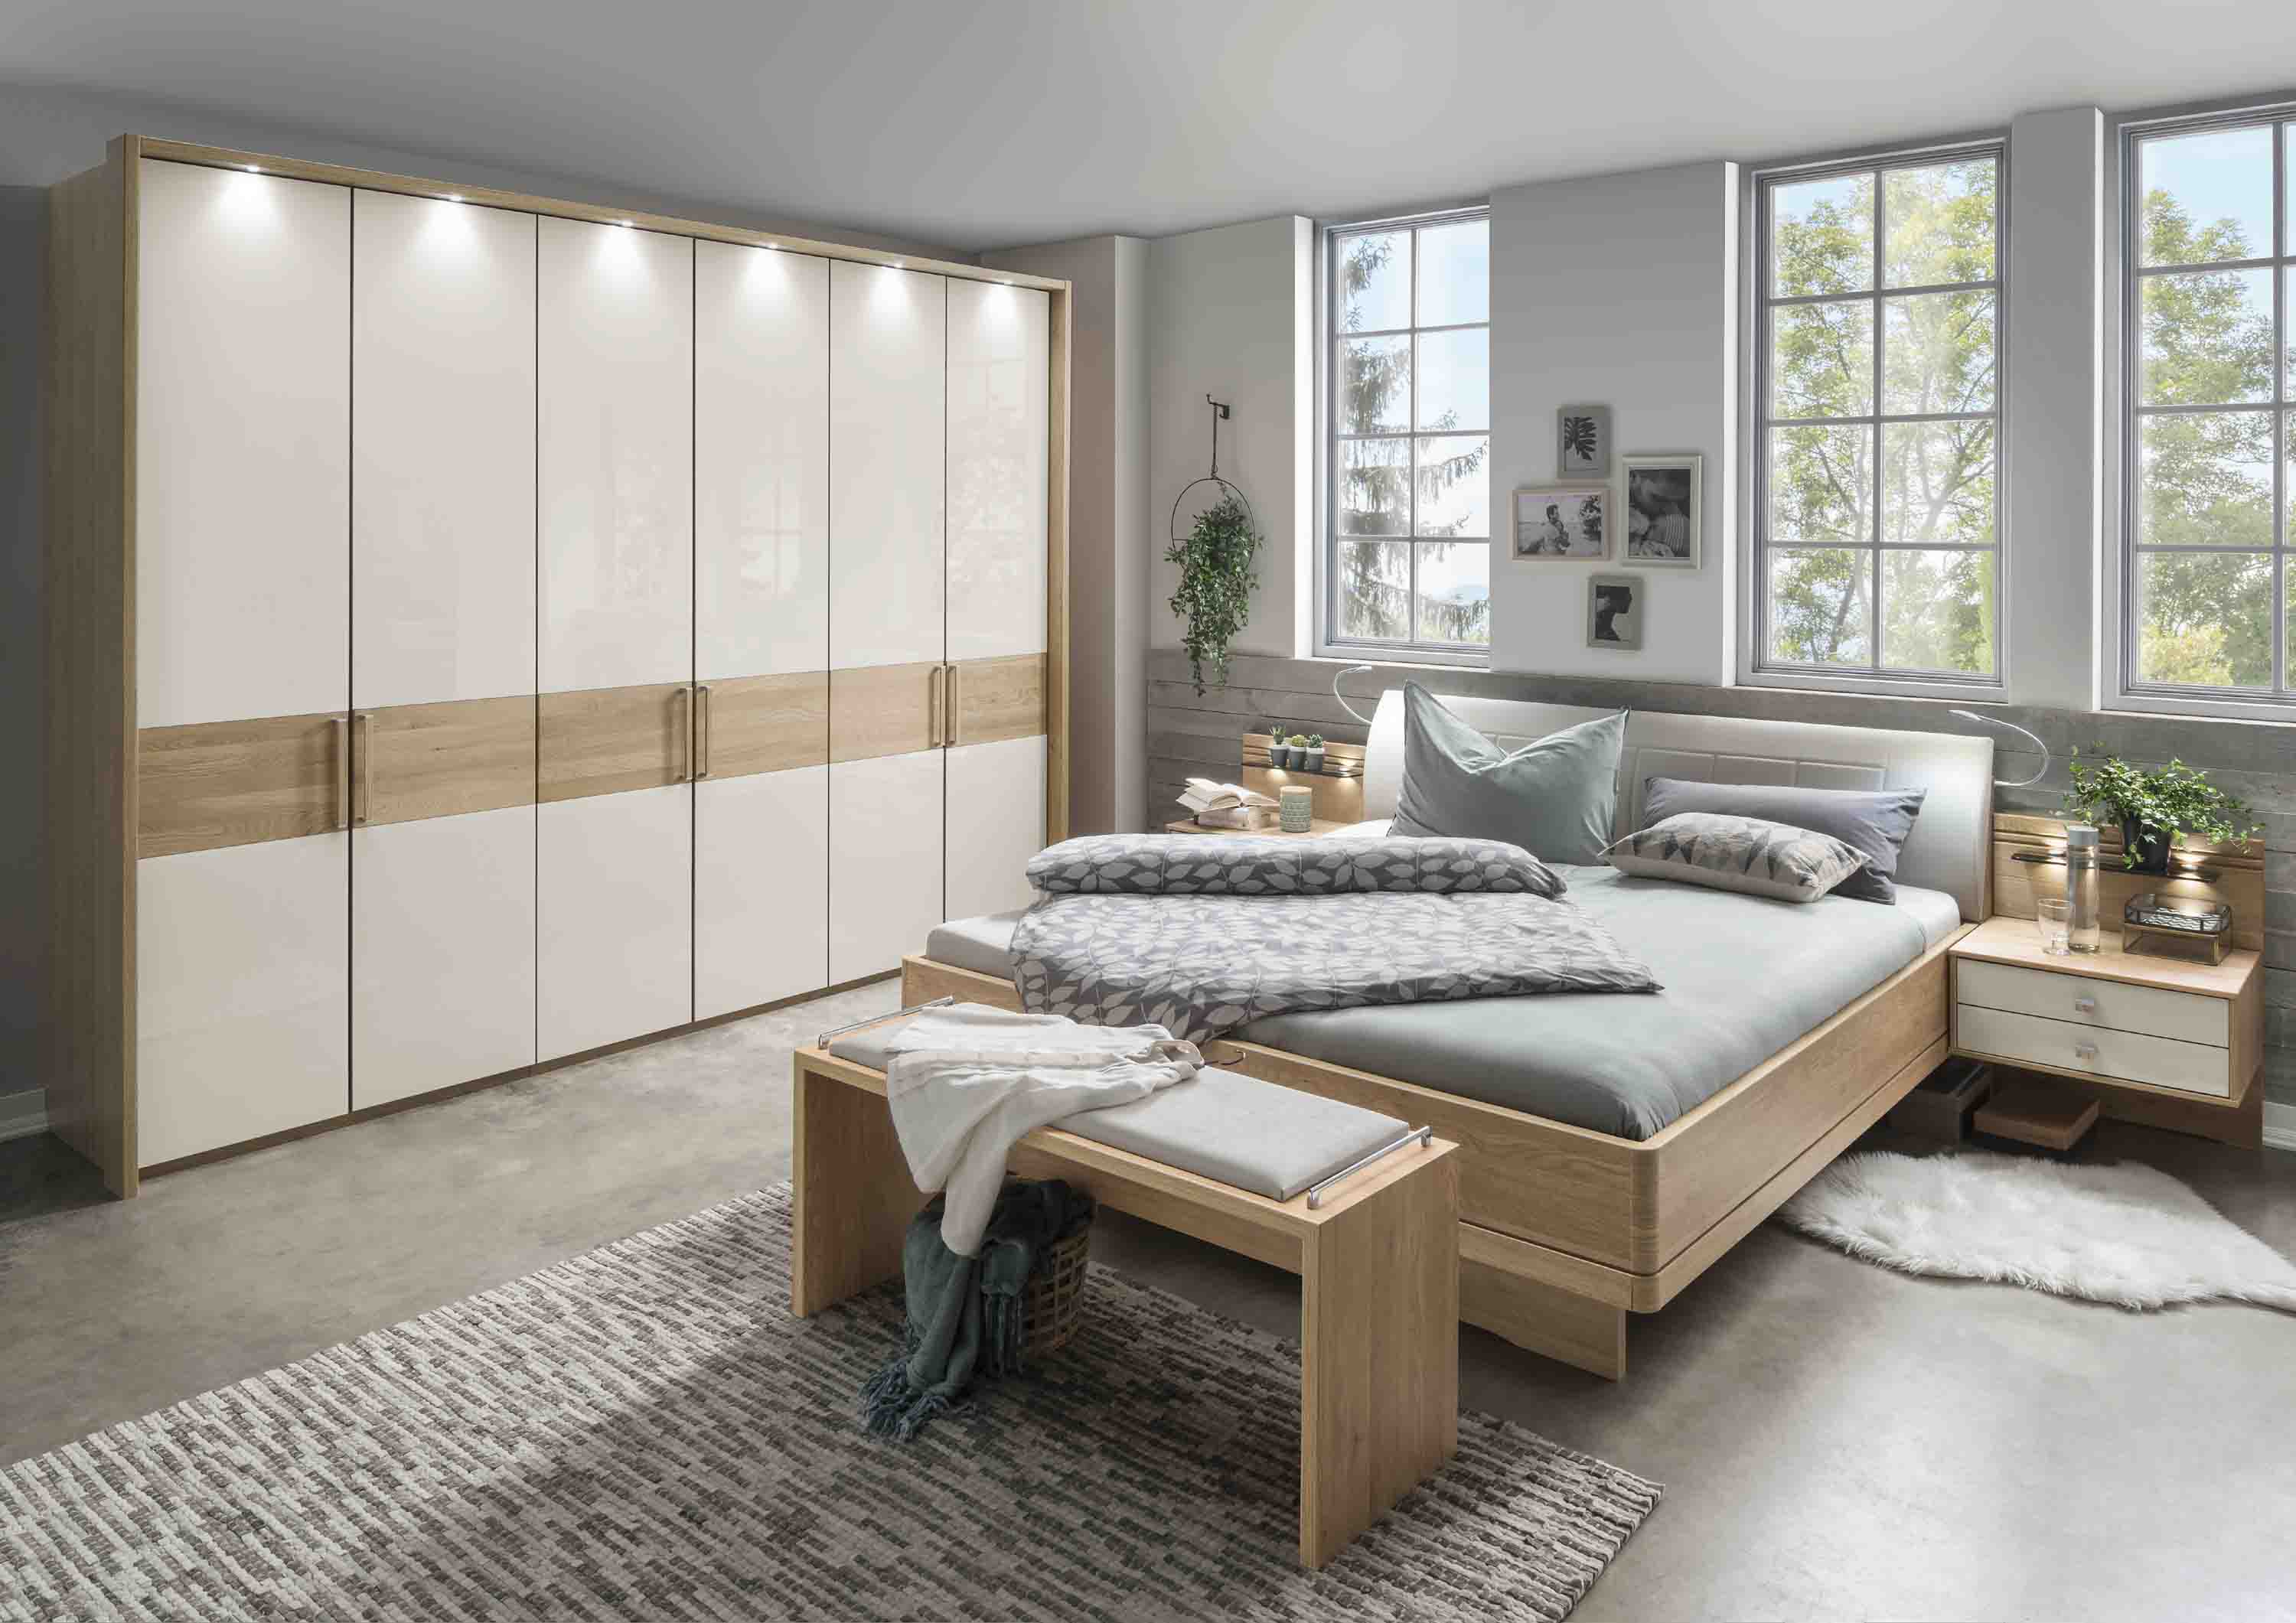 Schlafzimmer Kiruna in Eiche teilmassiv günstig, Wiemann | Massiva